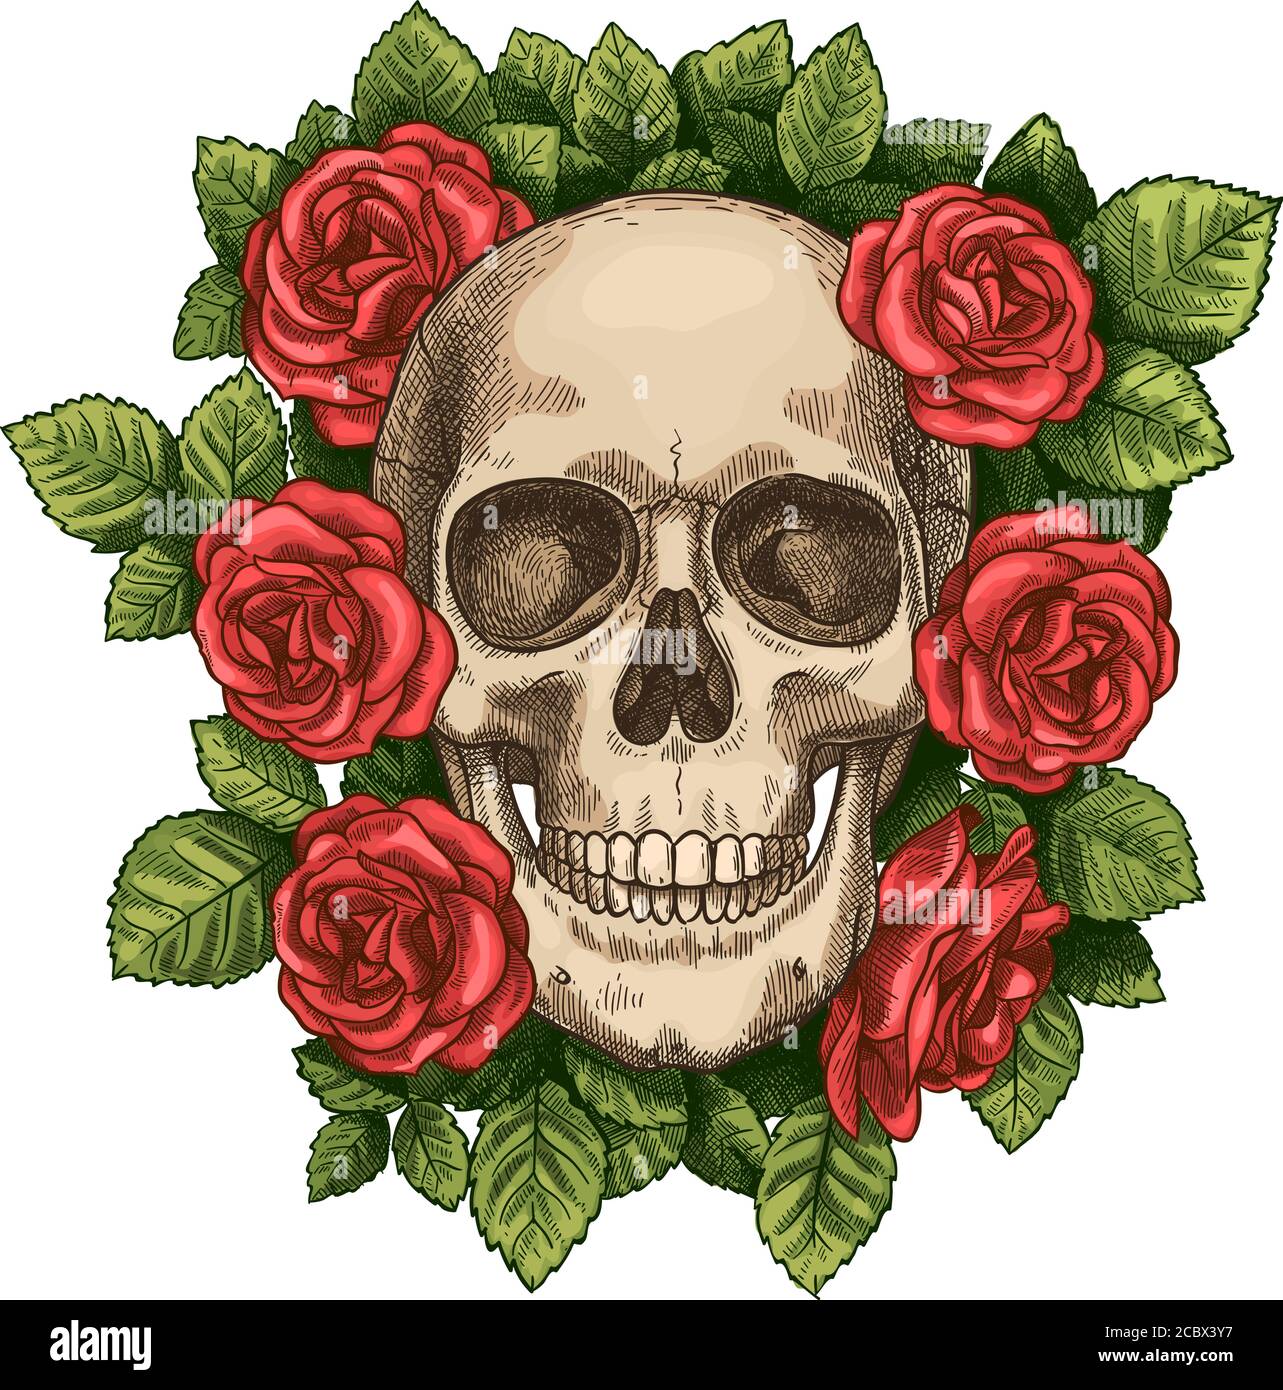 Schädel und Rosen. Totenschädel Kopf und rote Blumen, handgezeichnete Gothic Tattoo Grafik. Vintage gruselig halloween Tod Skizze Vektor-Symbol Stock Vektor